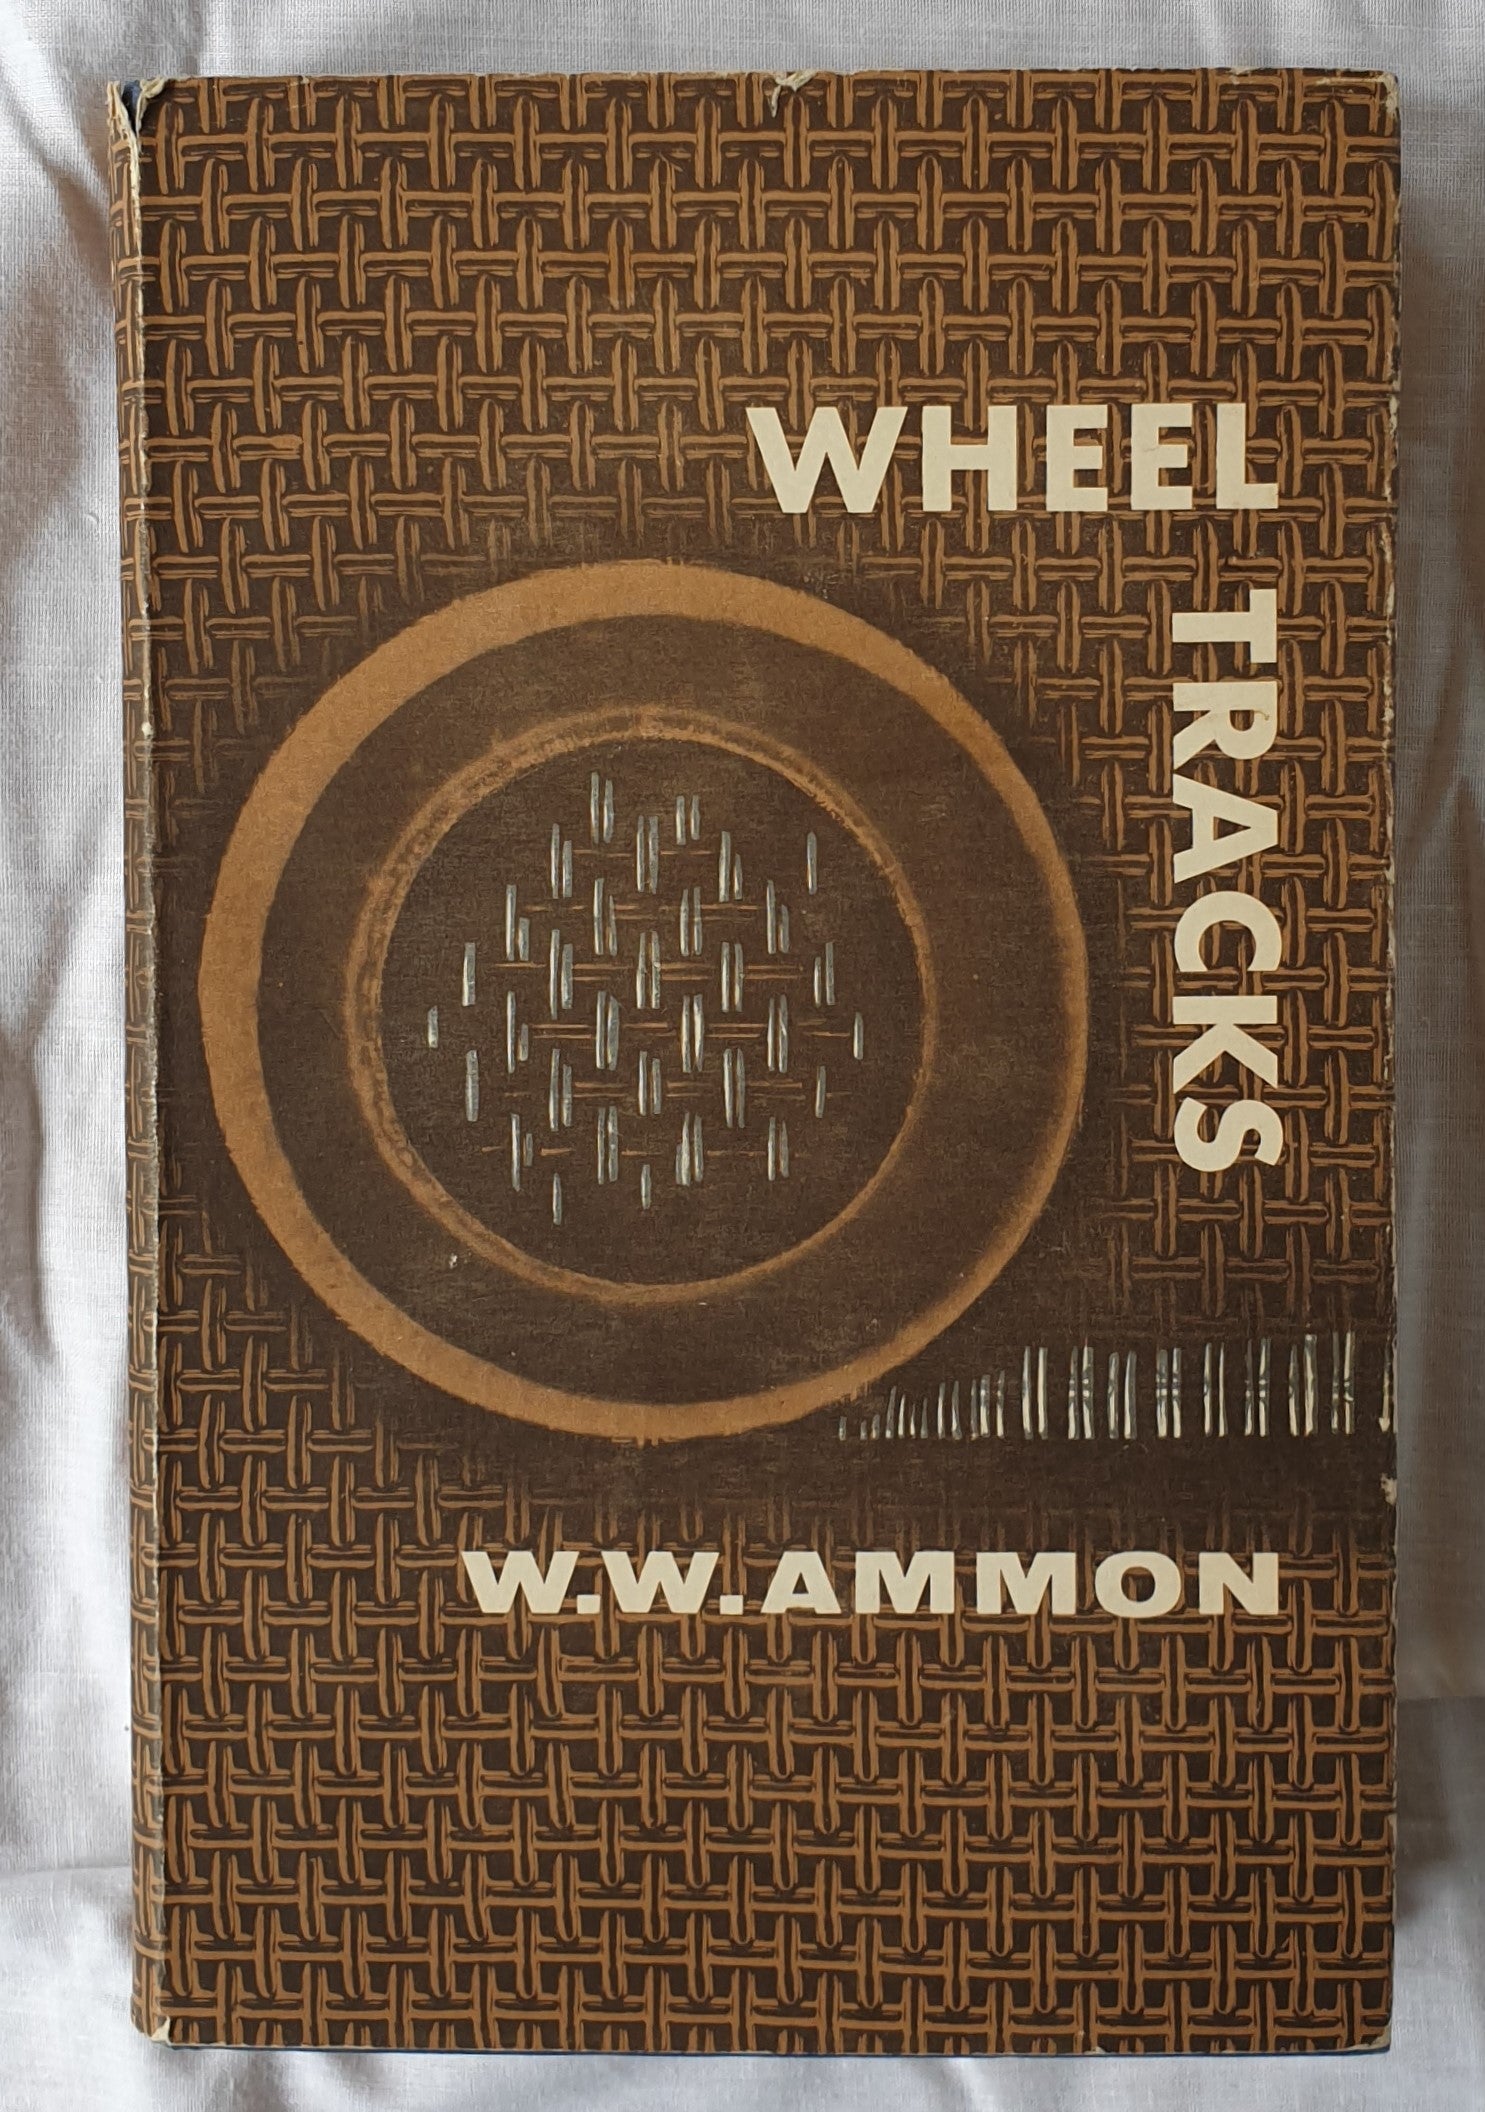 Wheel Tracks  by W. W. Ammon